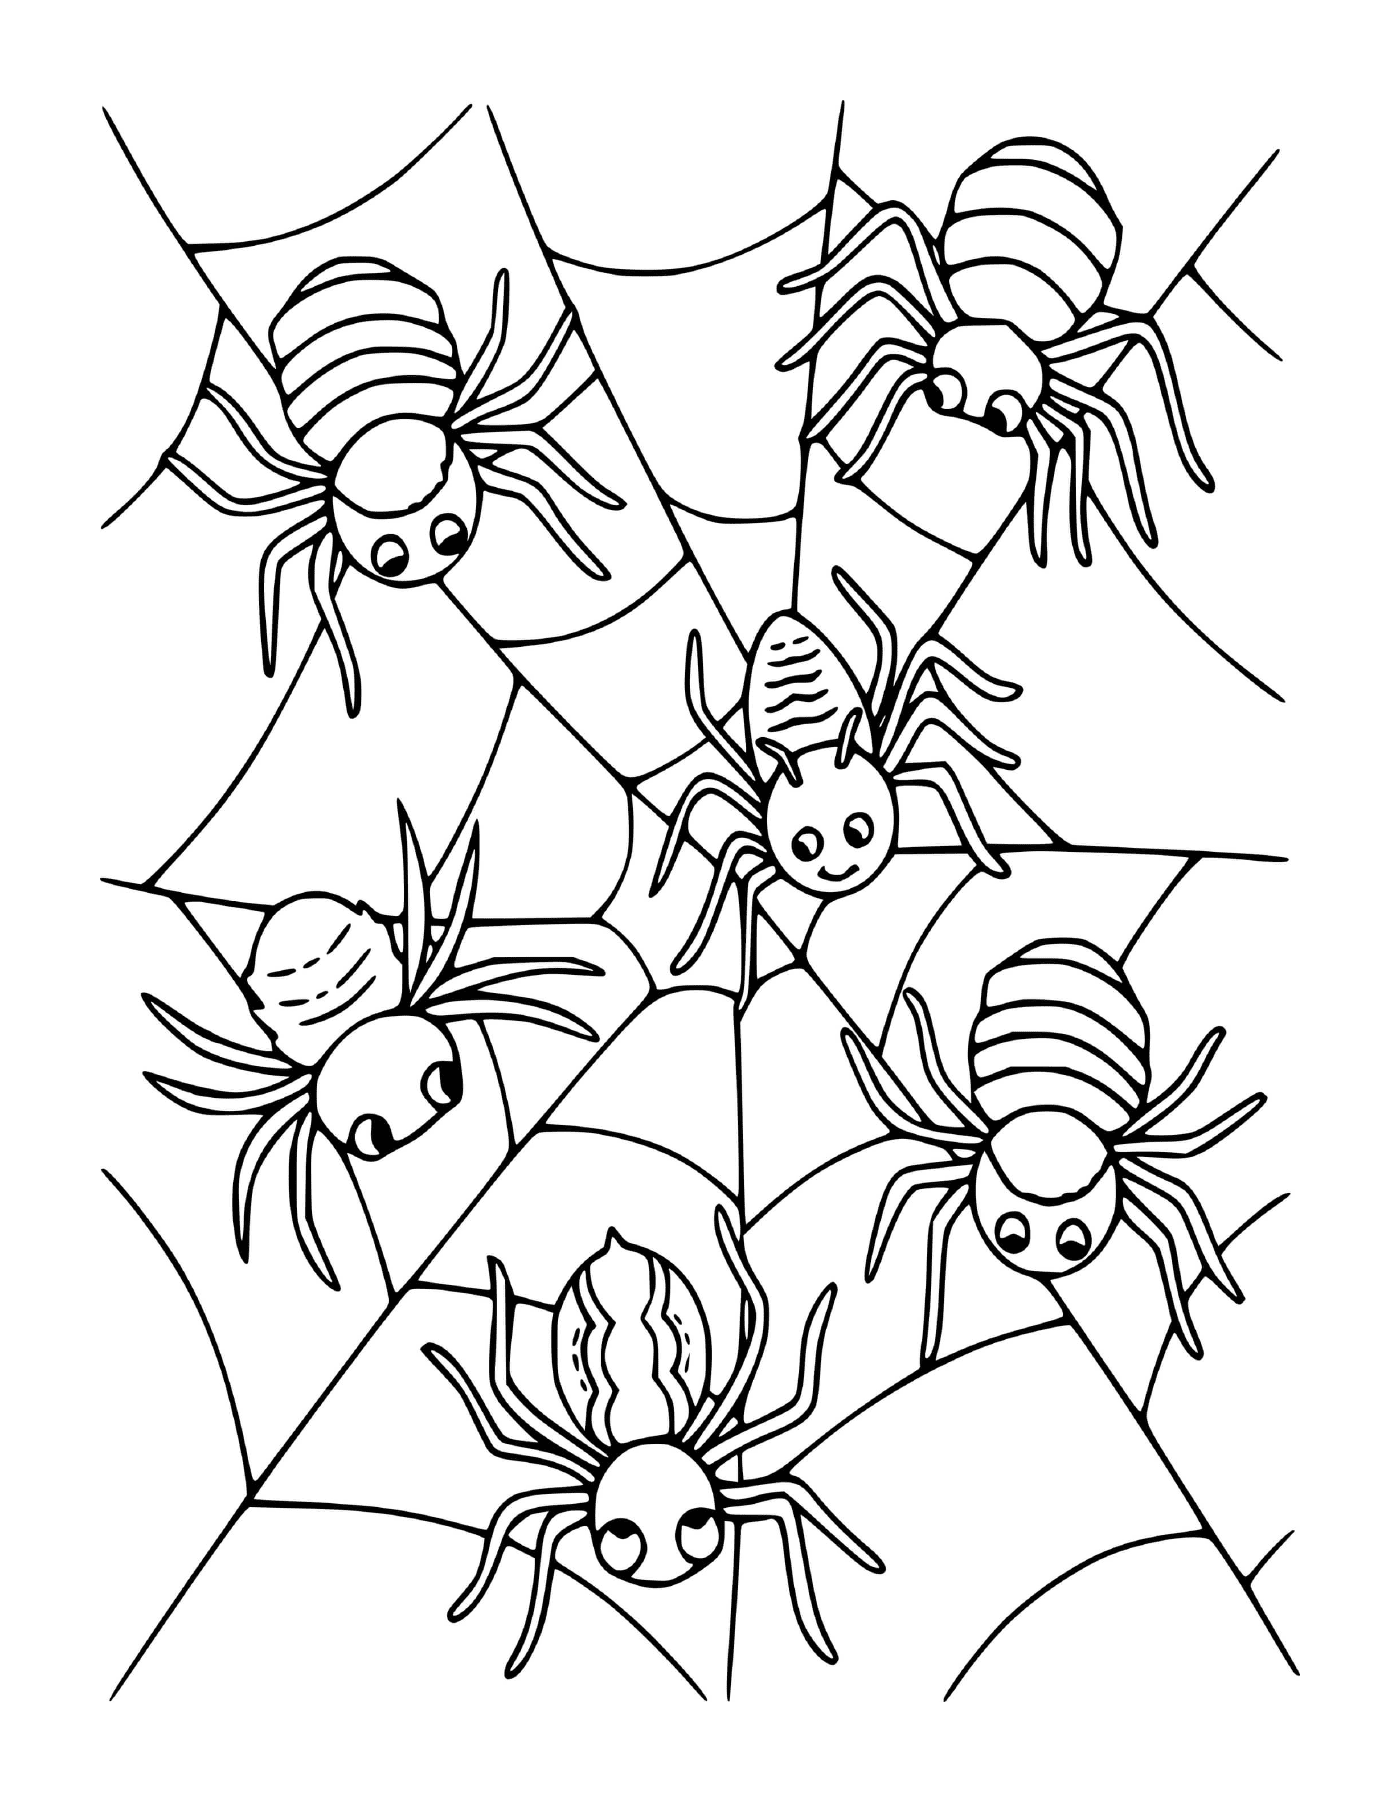  Eine Gruppe von vier Spinnen, die auf einem Netz sitzen 